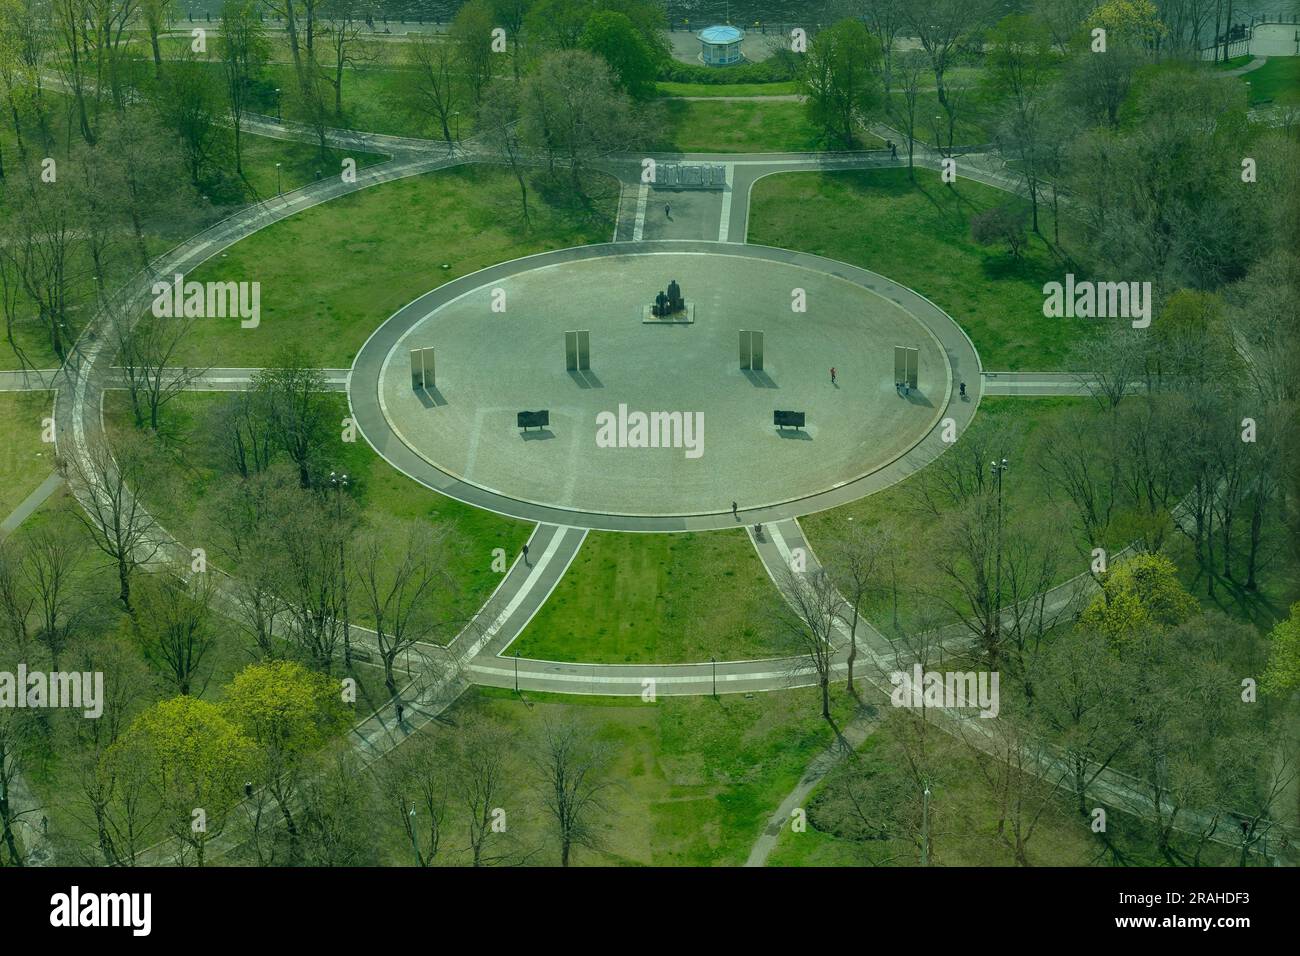 Vue panoramique du Marx-Engels-Forum, le parc public dans le quartier central de Berlin Allemagne Banque D'Images